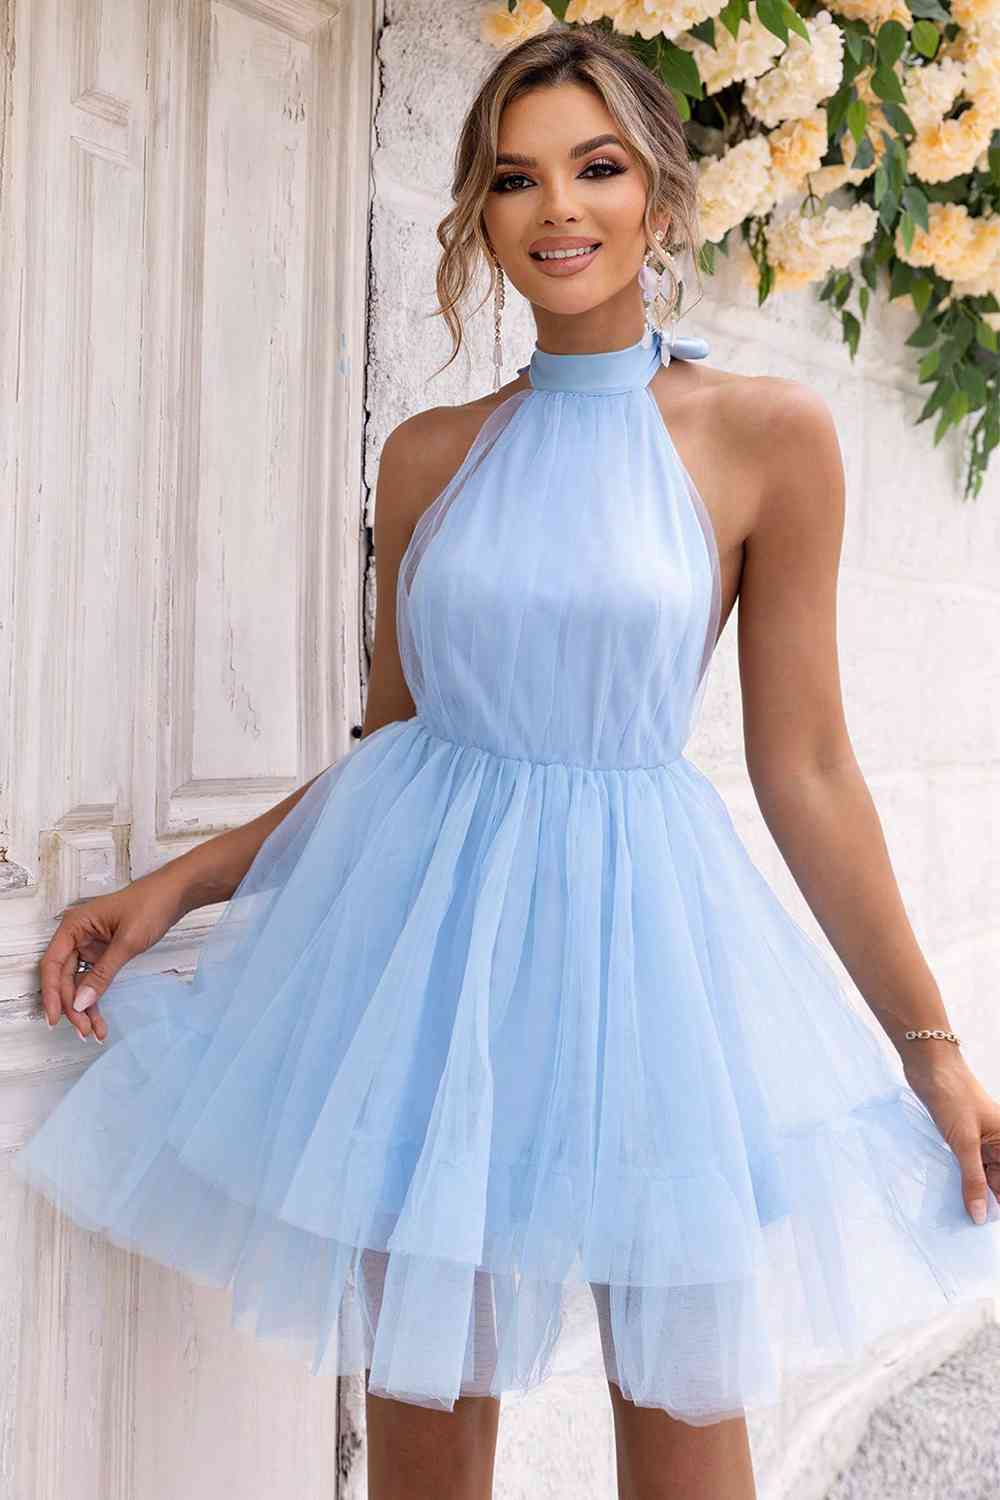 Sweetheart Dress